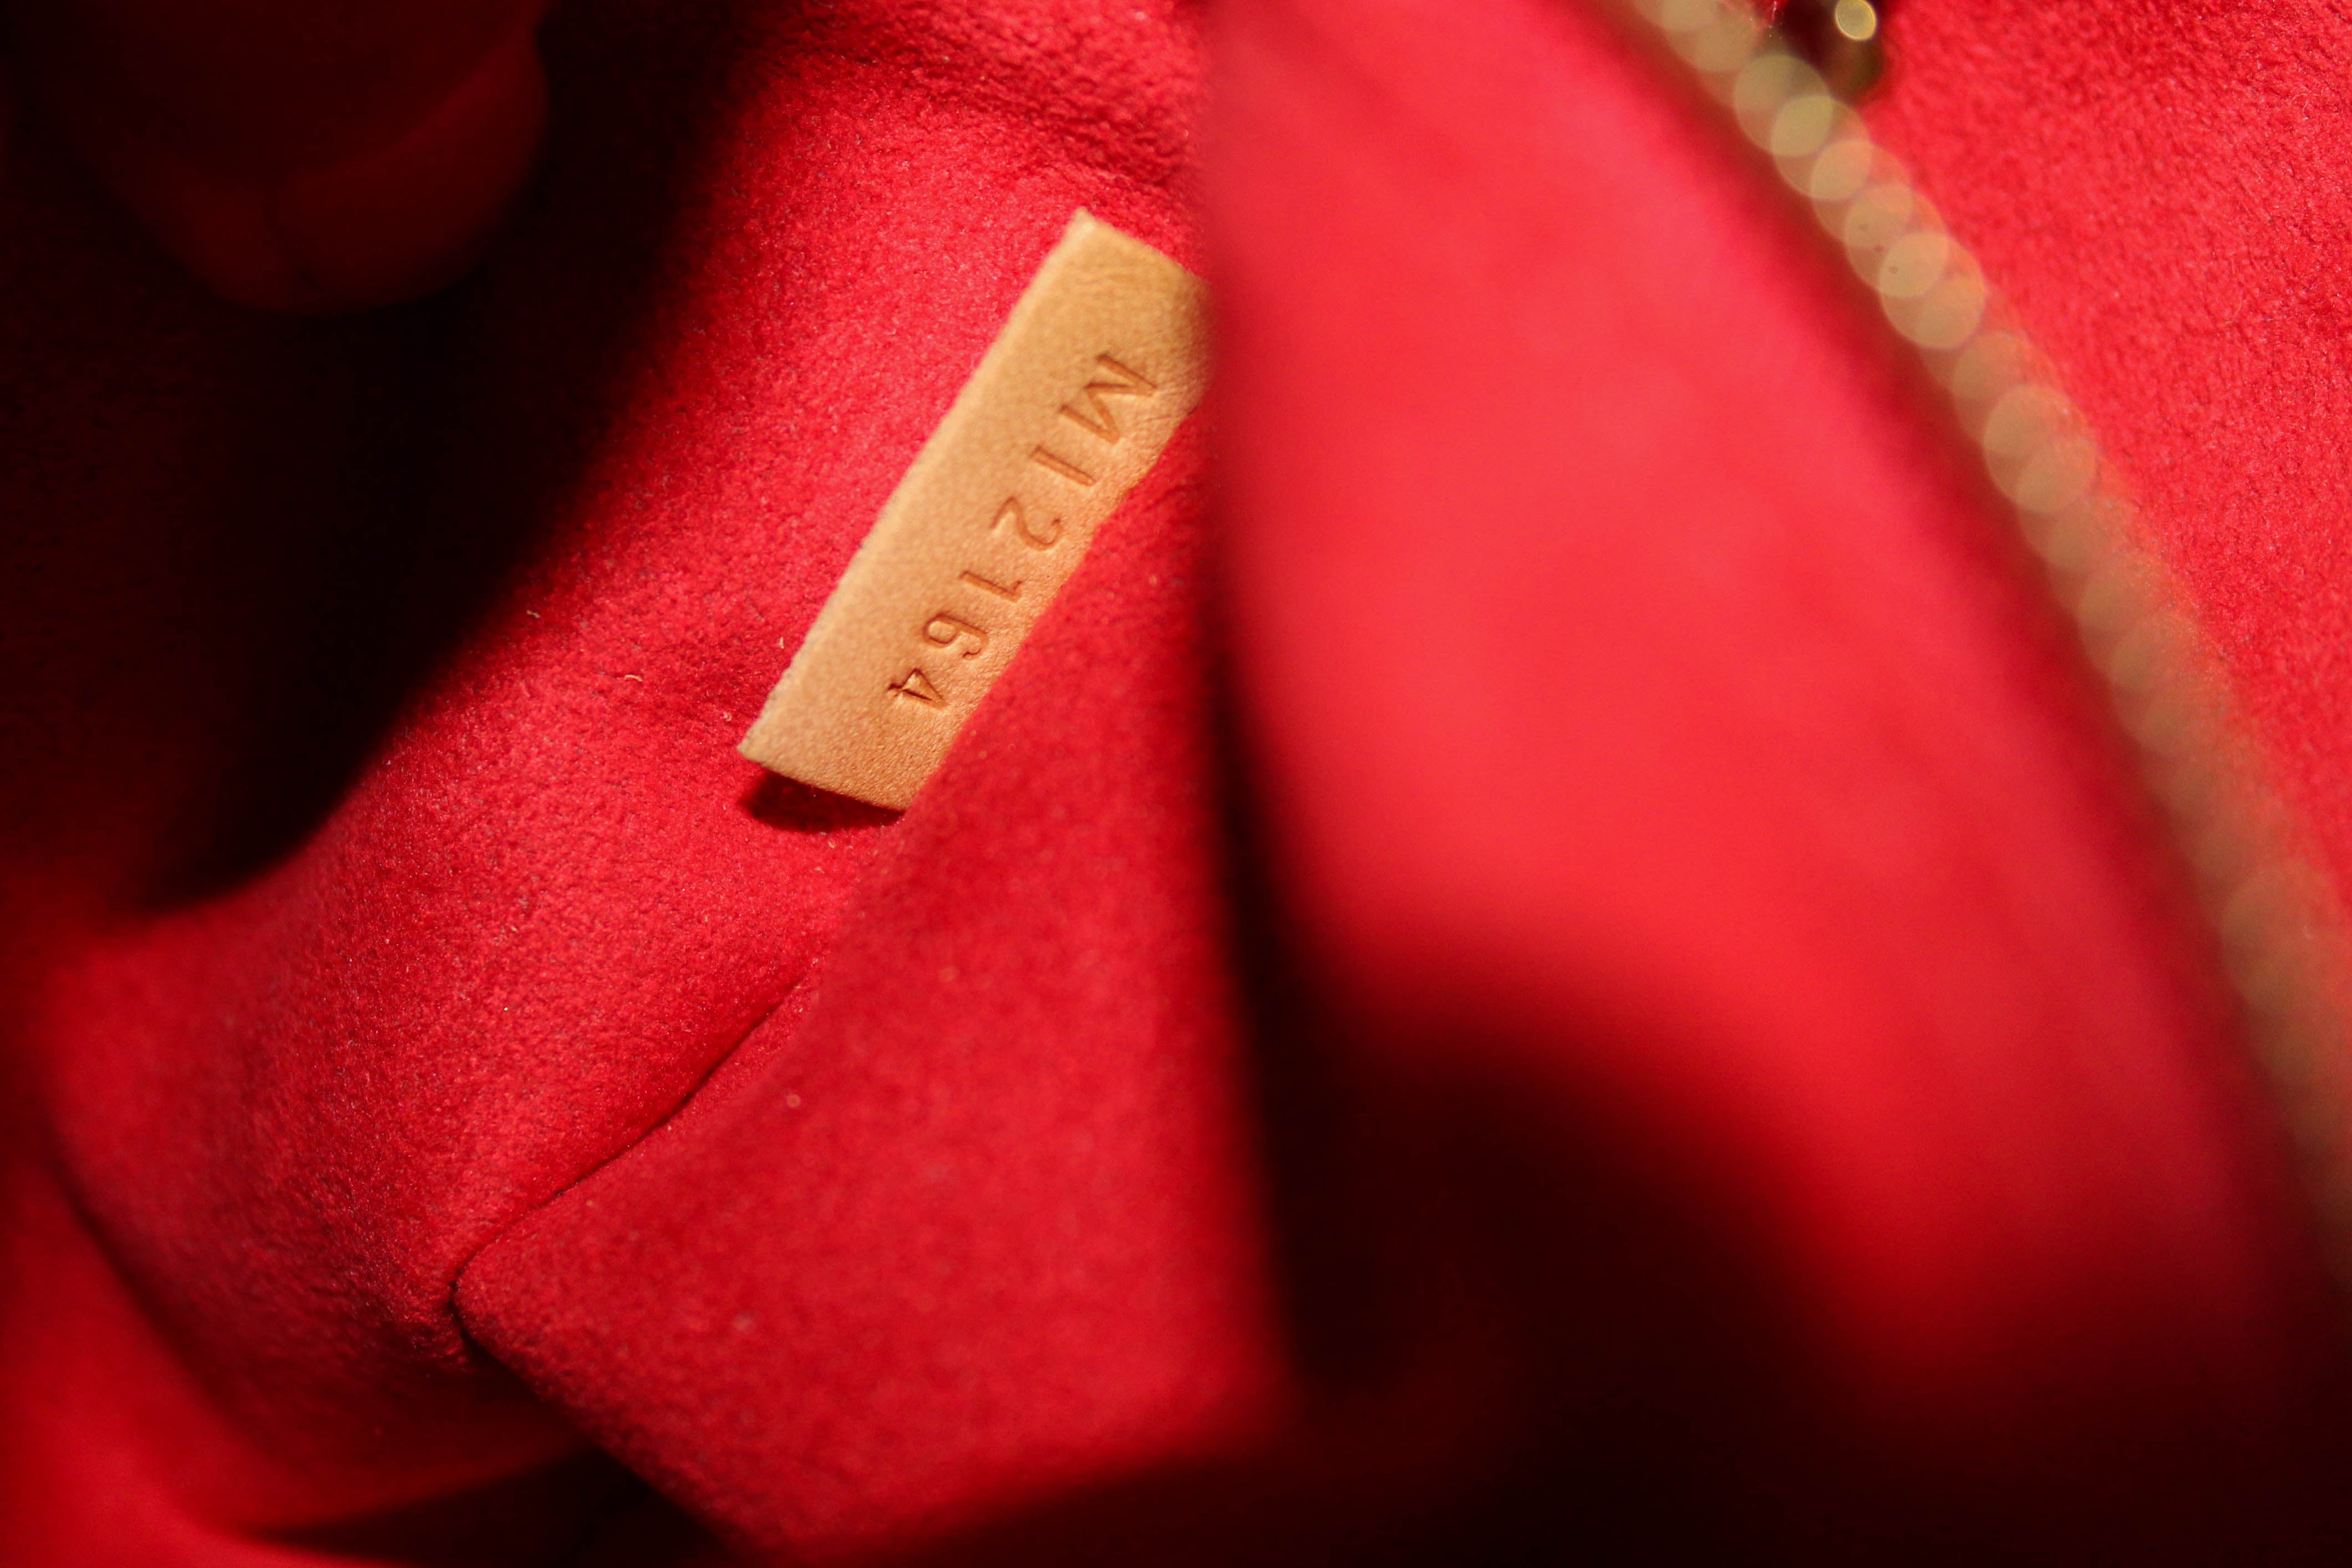 M41200 Louis Vuitton Pallas Chain Shoulder Bag-Wine Red